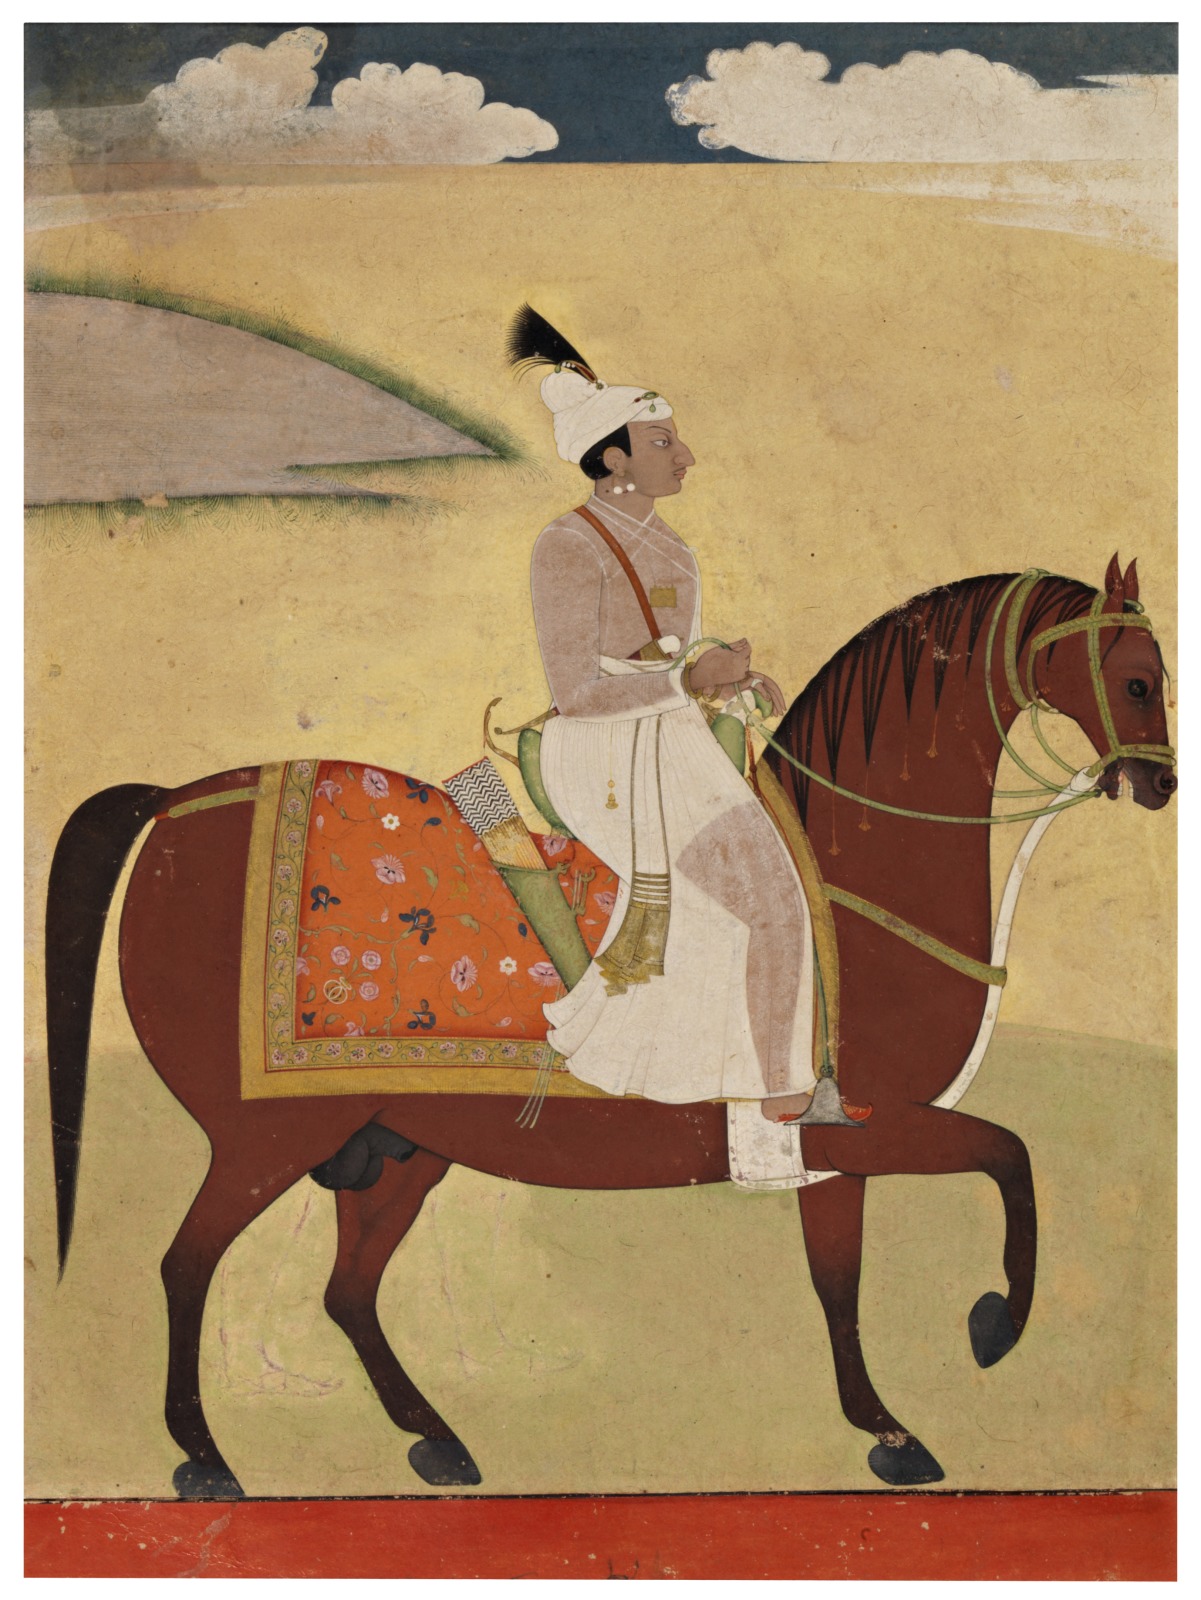 Prince Dalil Singh of Jammu Riding